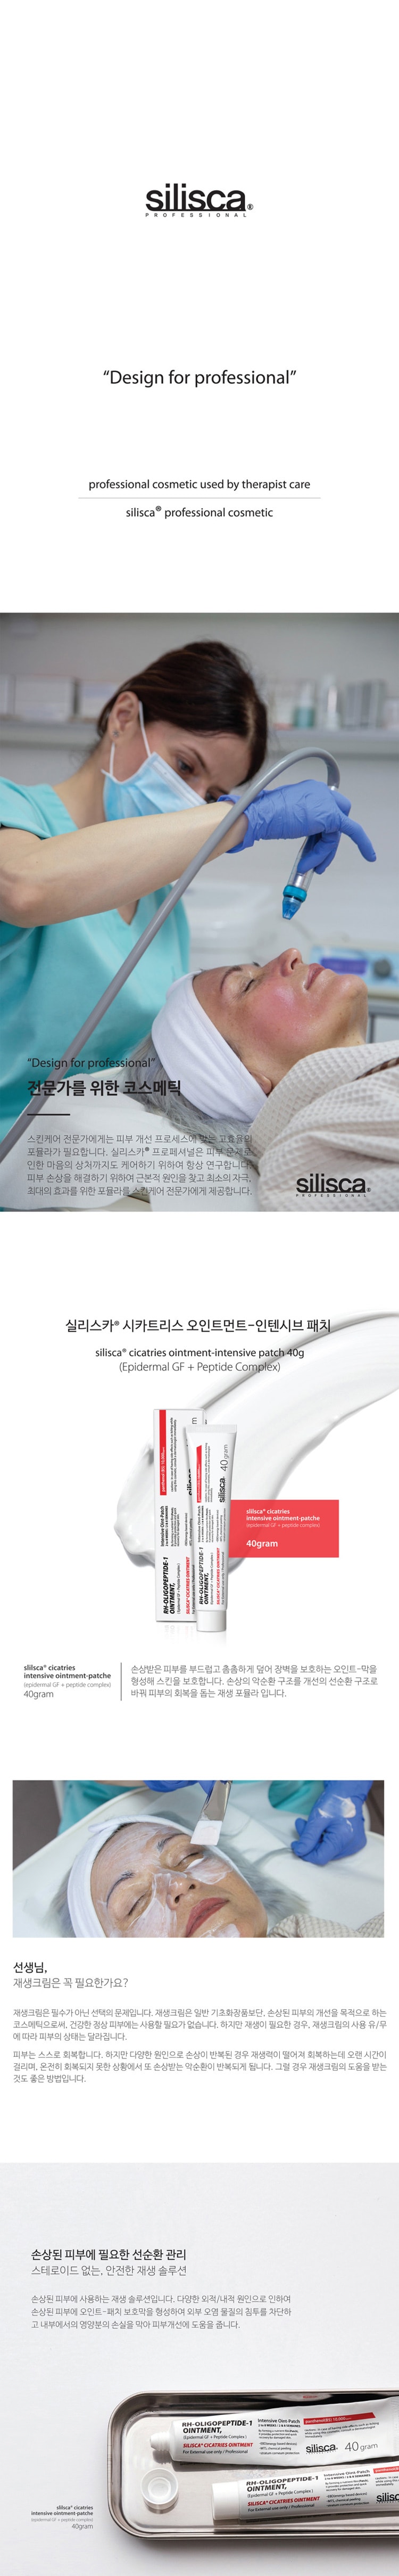 韩国 silisca 皮肤科再生修复面霜 40g 【医美/肌肤问题都可用】